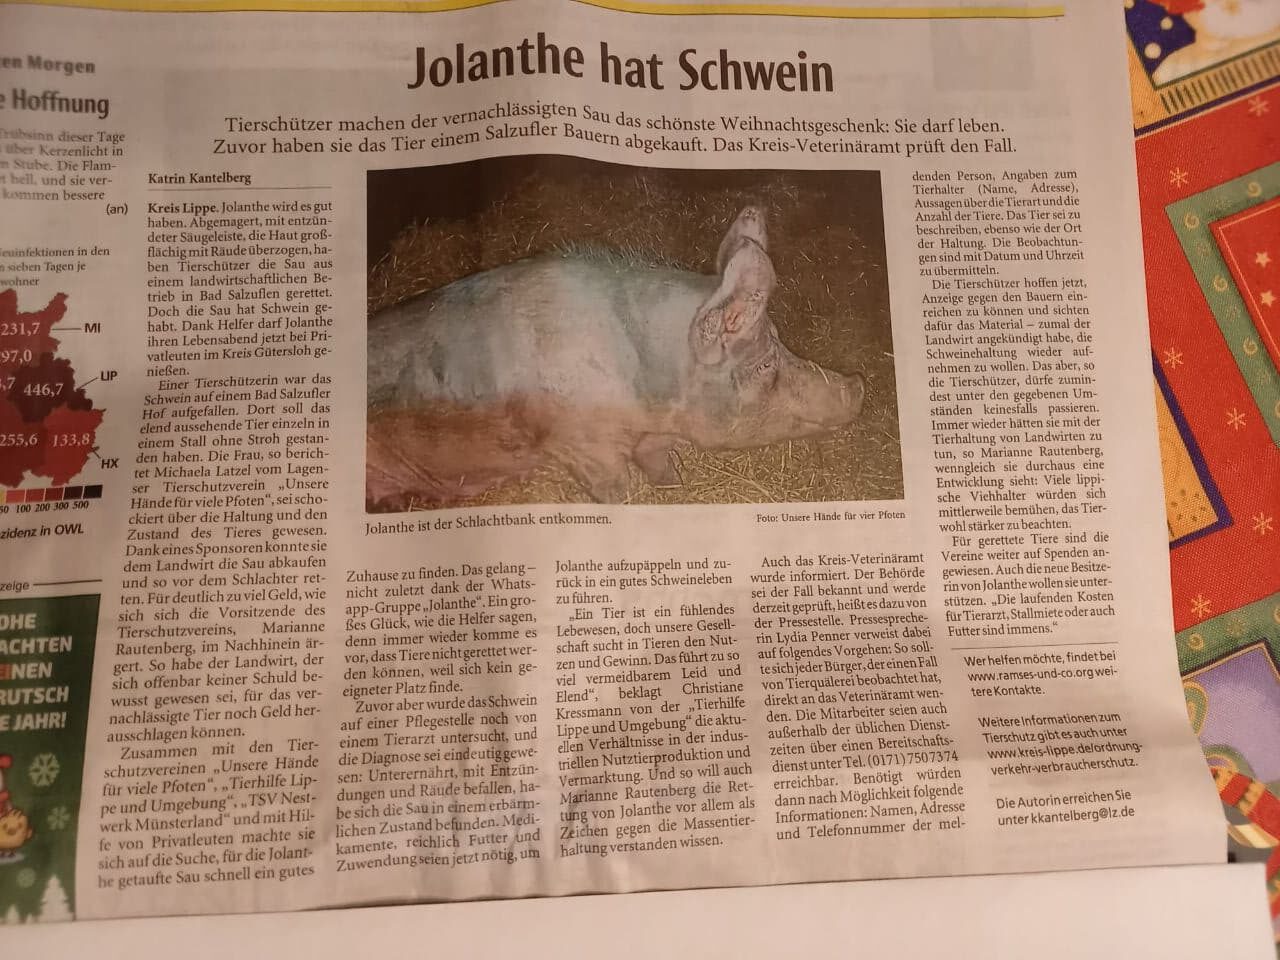 Jolanthe hat Schwein – Zeitungsartikel